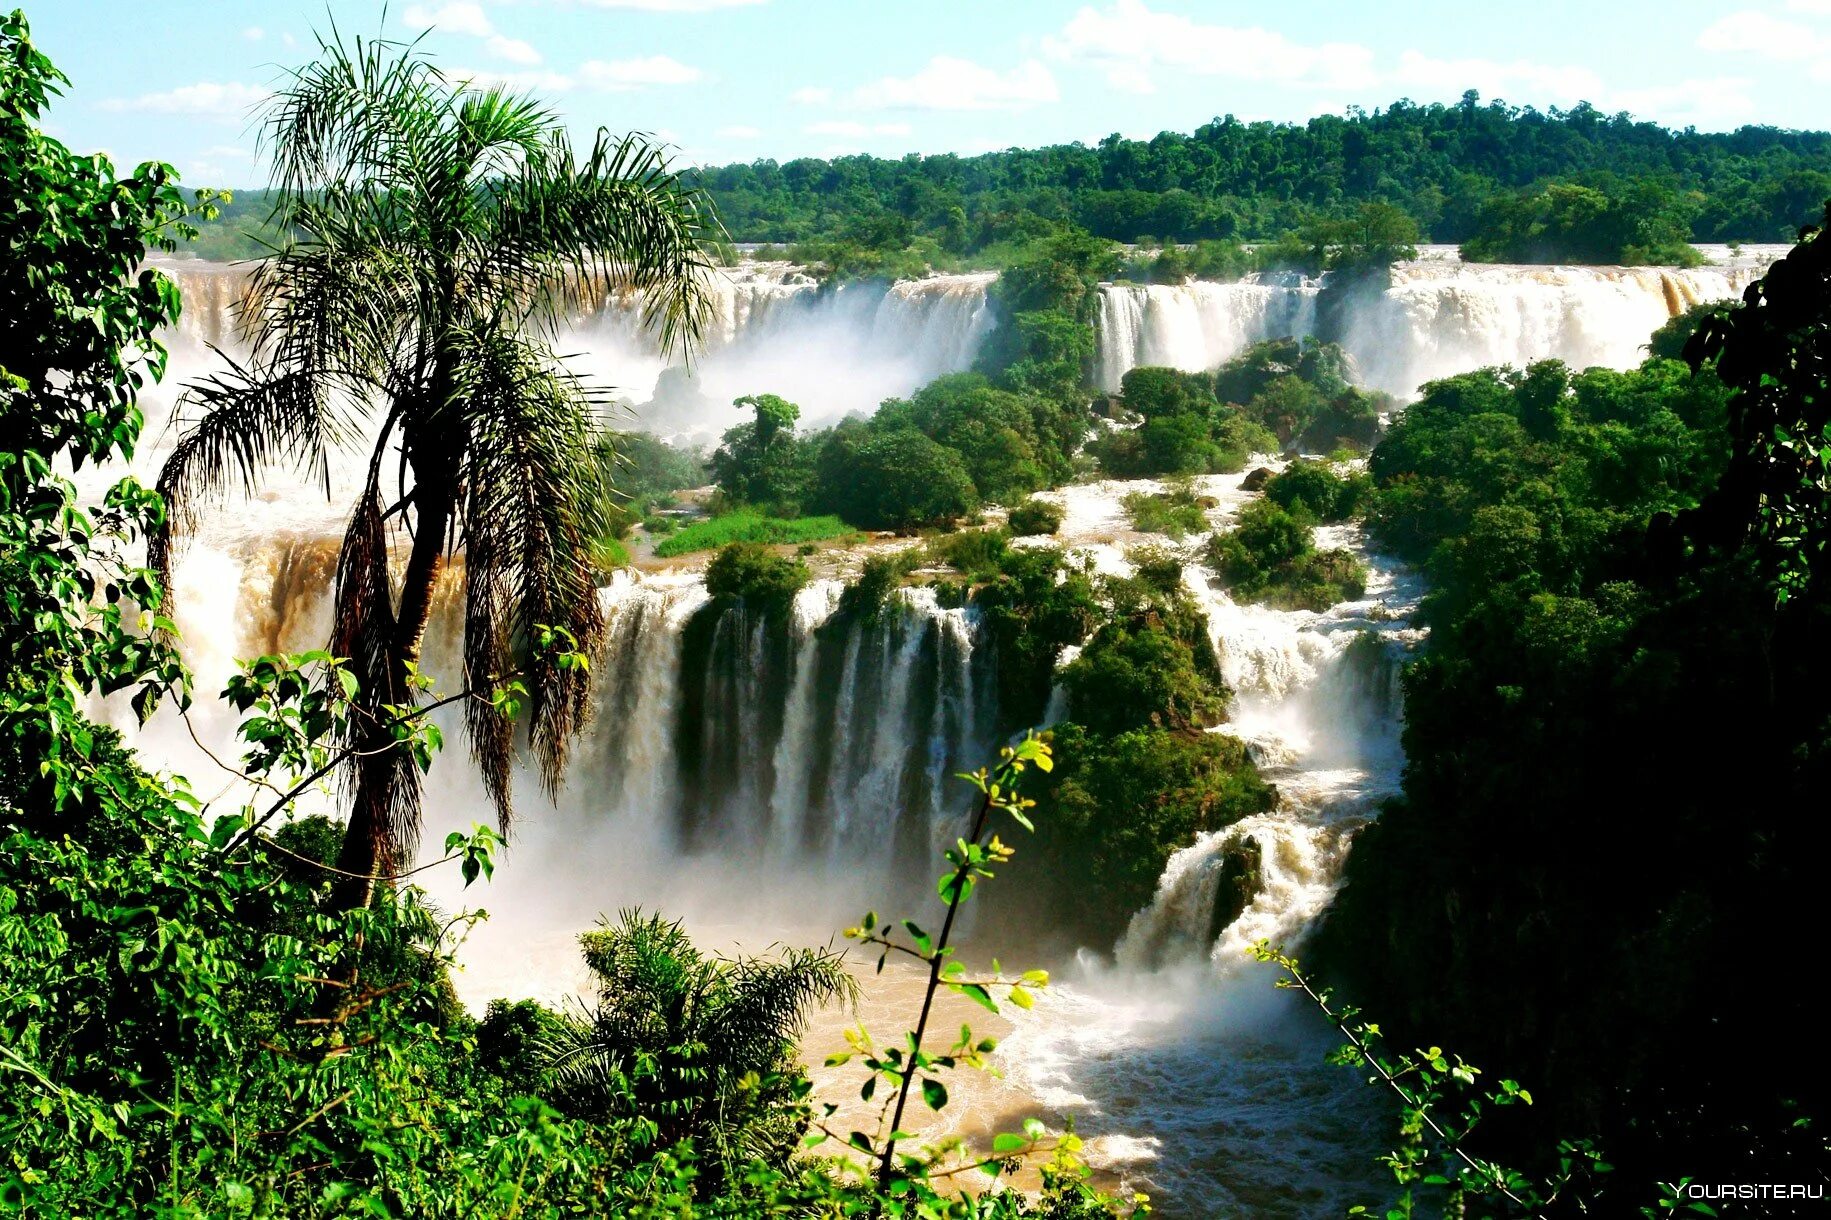 Игуасу (национальный парк, Аргентина). Водопады Игуасу Аргентина Бразилия. Национальный парк Игуасу, Бразилия / Аргентина. Водопад Игуасу в Южной Америке. Игуасу это